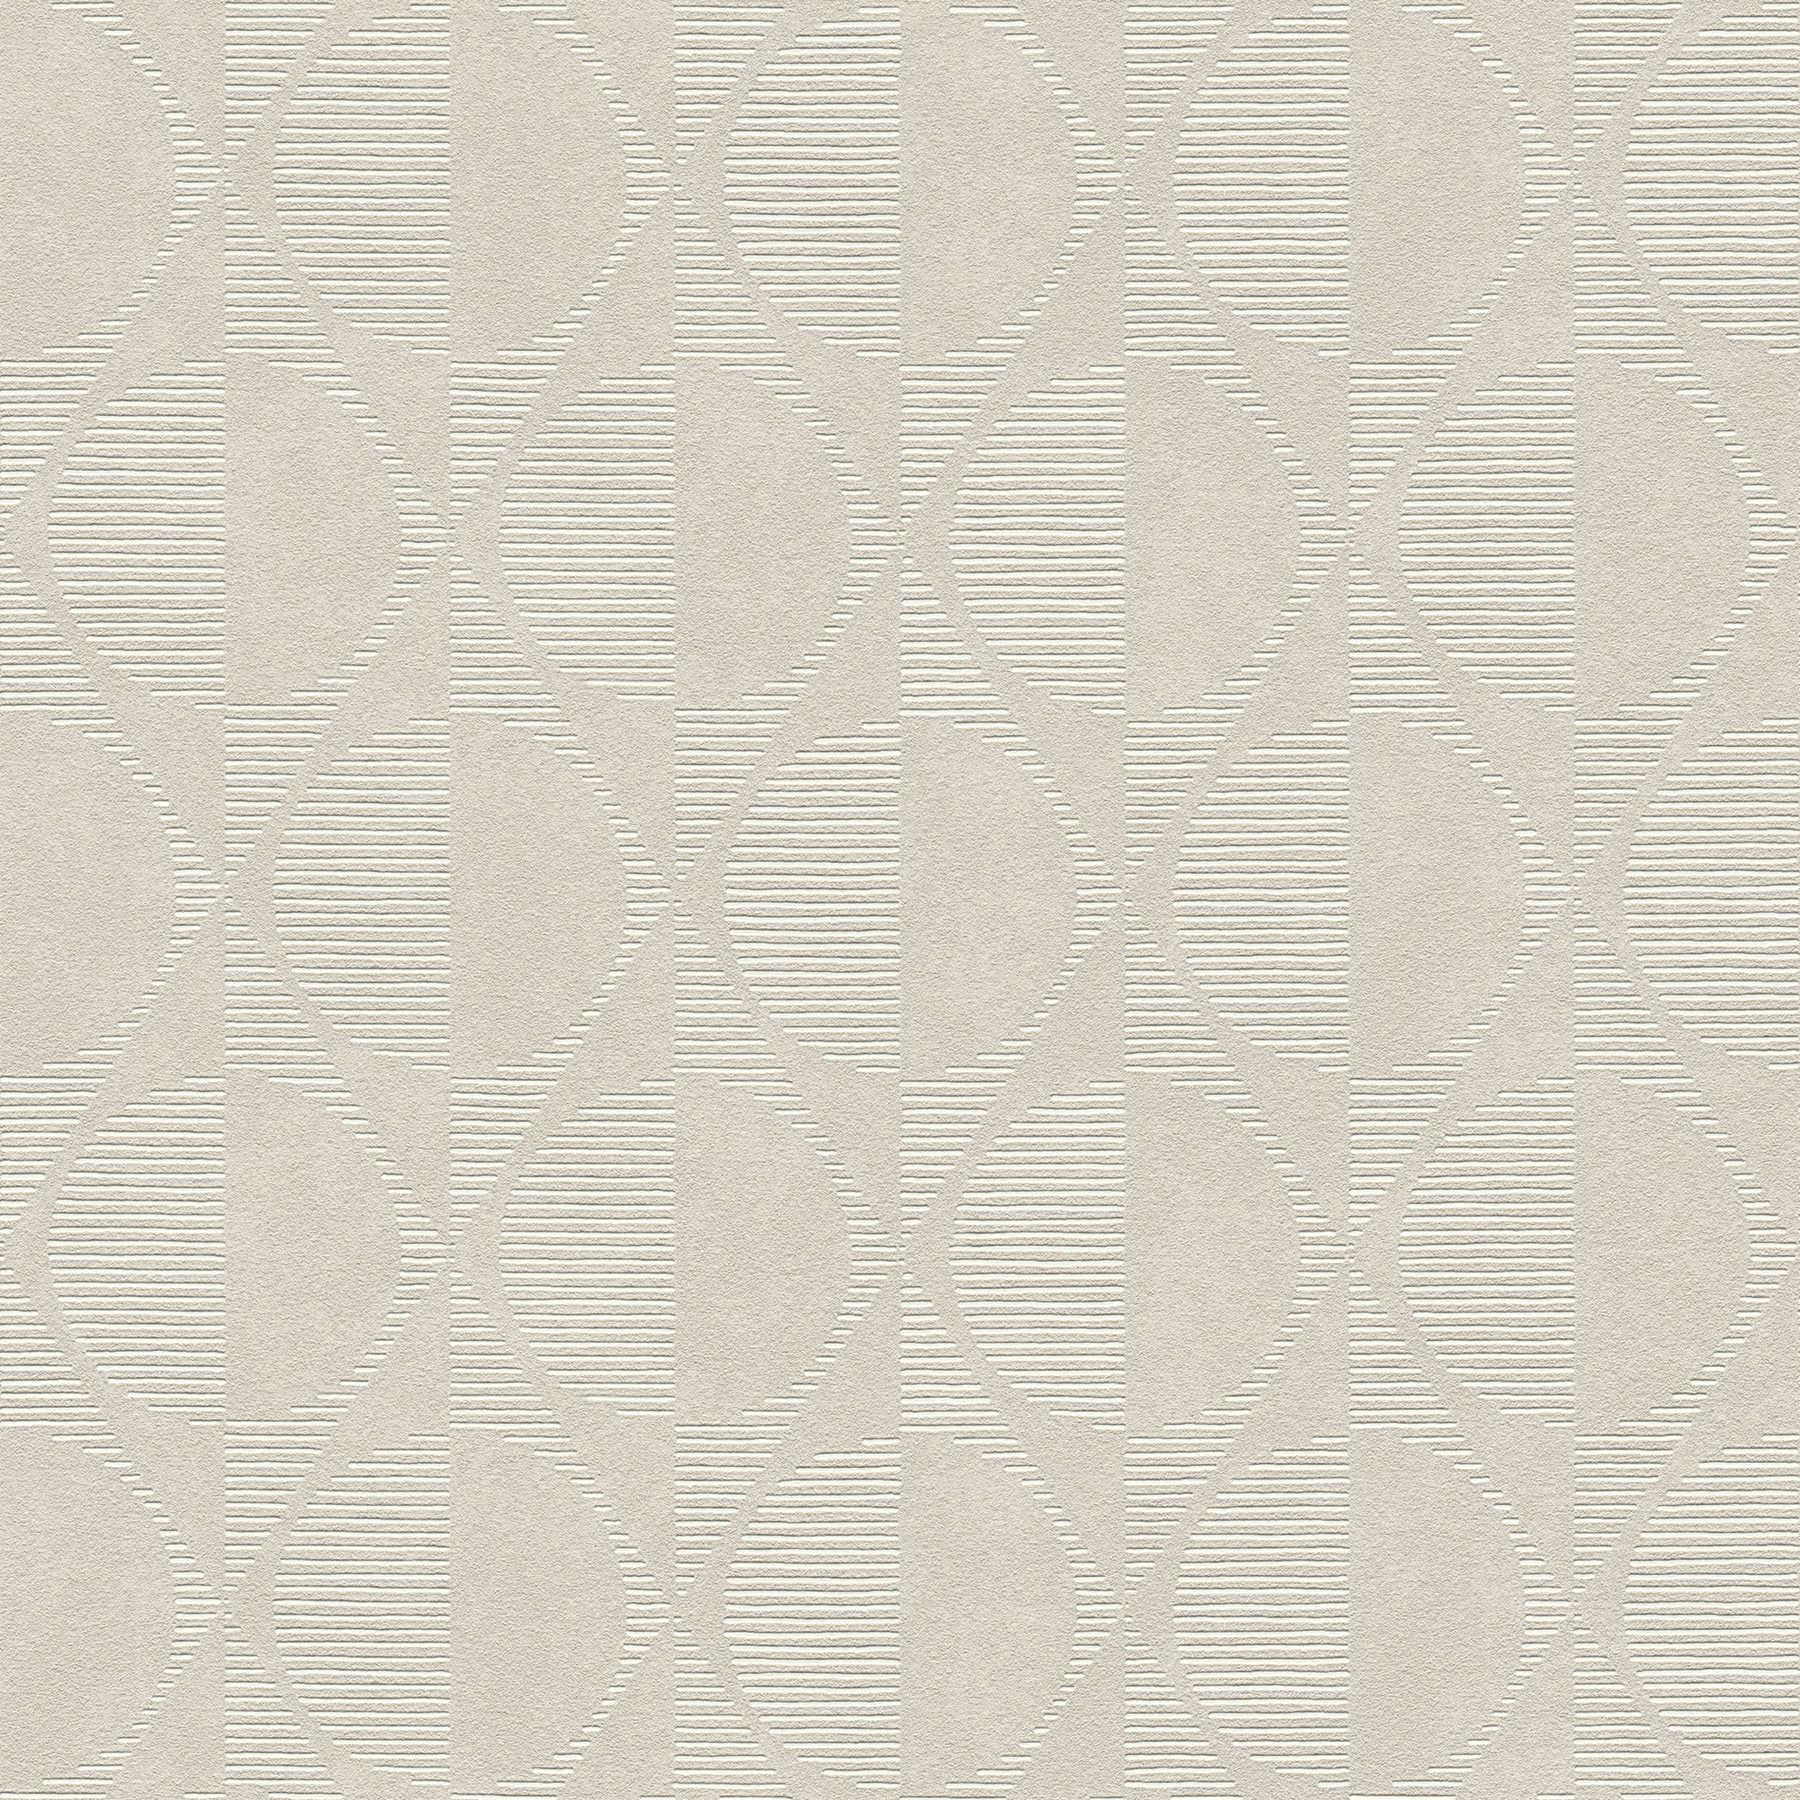 Retro behang met symmetrisch patroon - beige, grijs, crème
